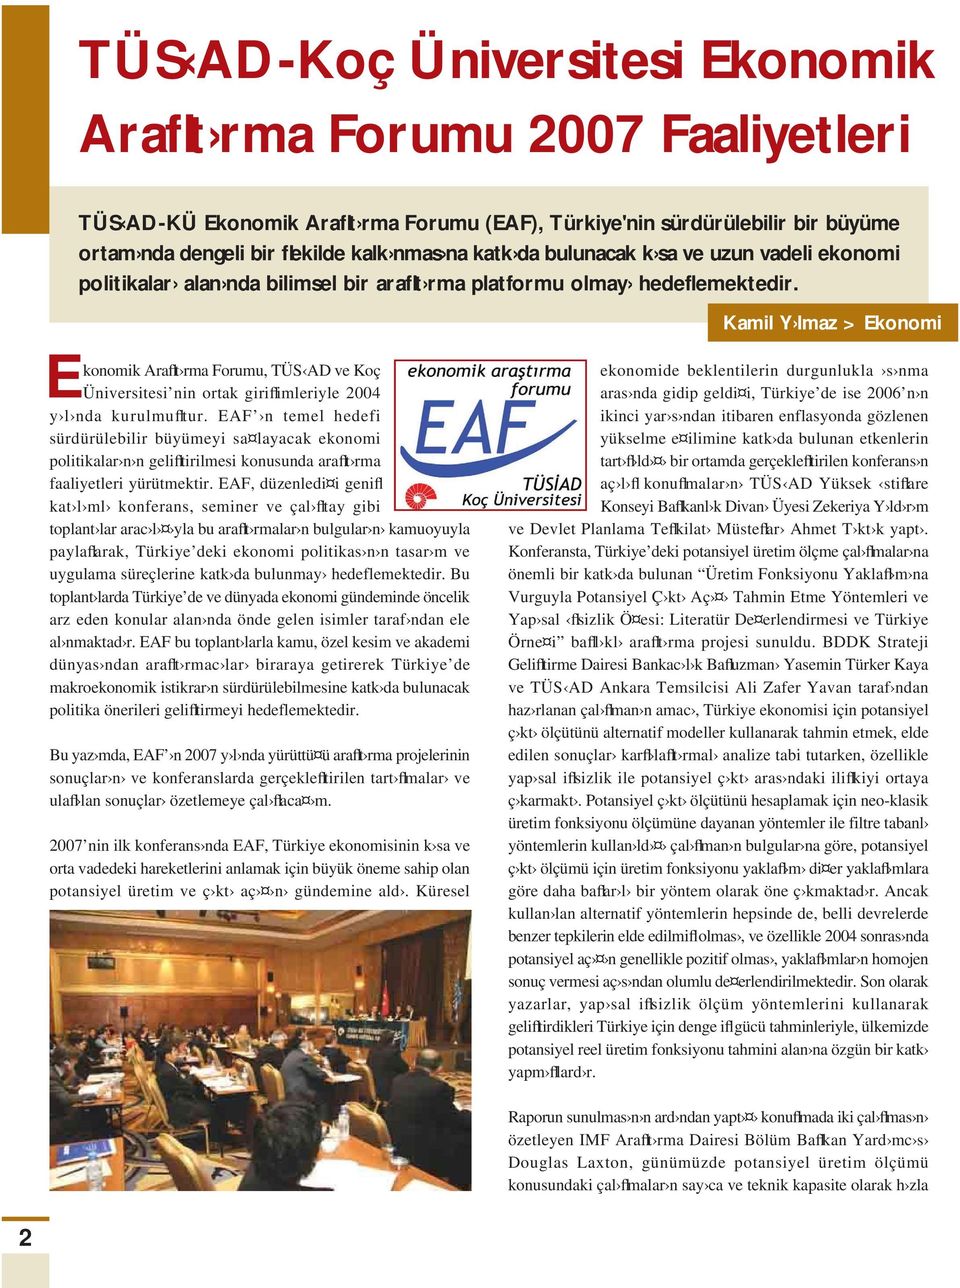 Kamil Y lmaz > Ekonomi Ekonomik Araflt rma Forumu, TÜS AD ve Koç Üniversitesi nin ortak giriflimleriyle 2004 y l nda kurulmufltur.